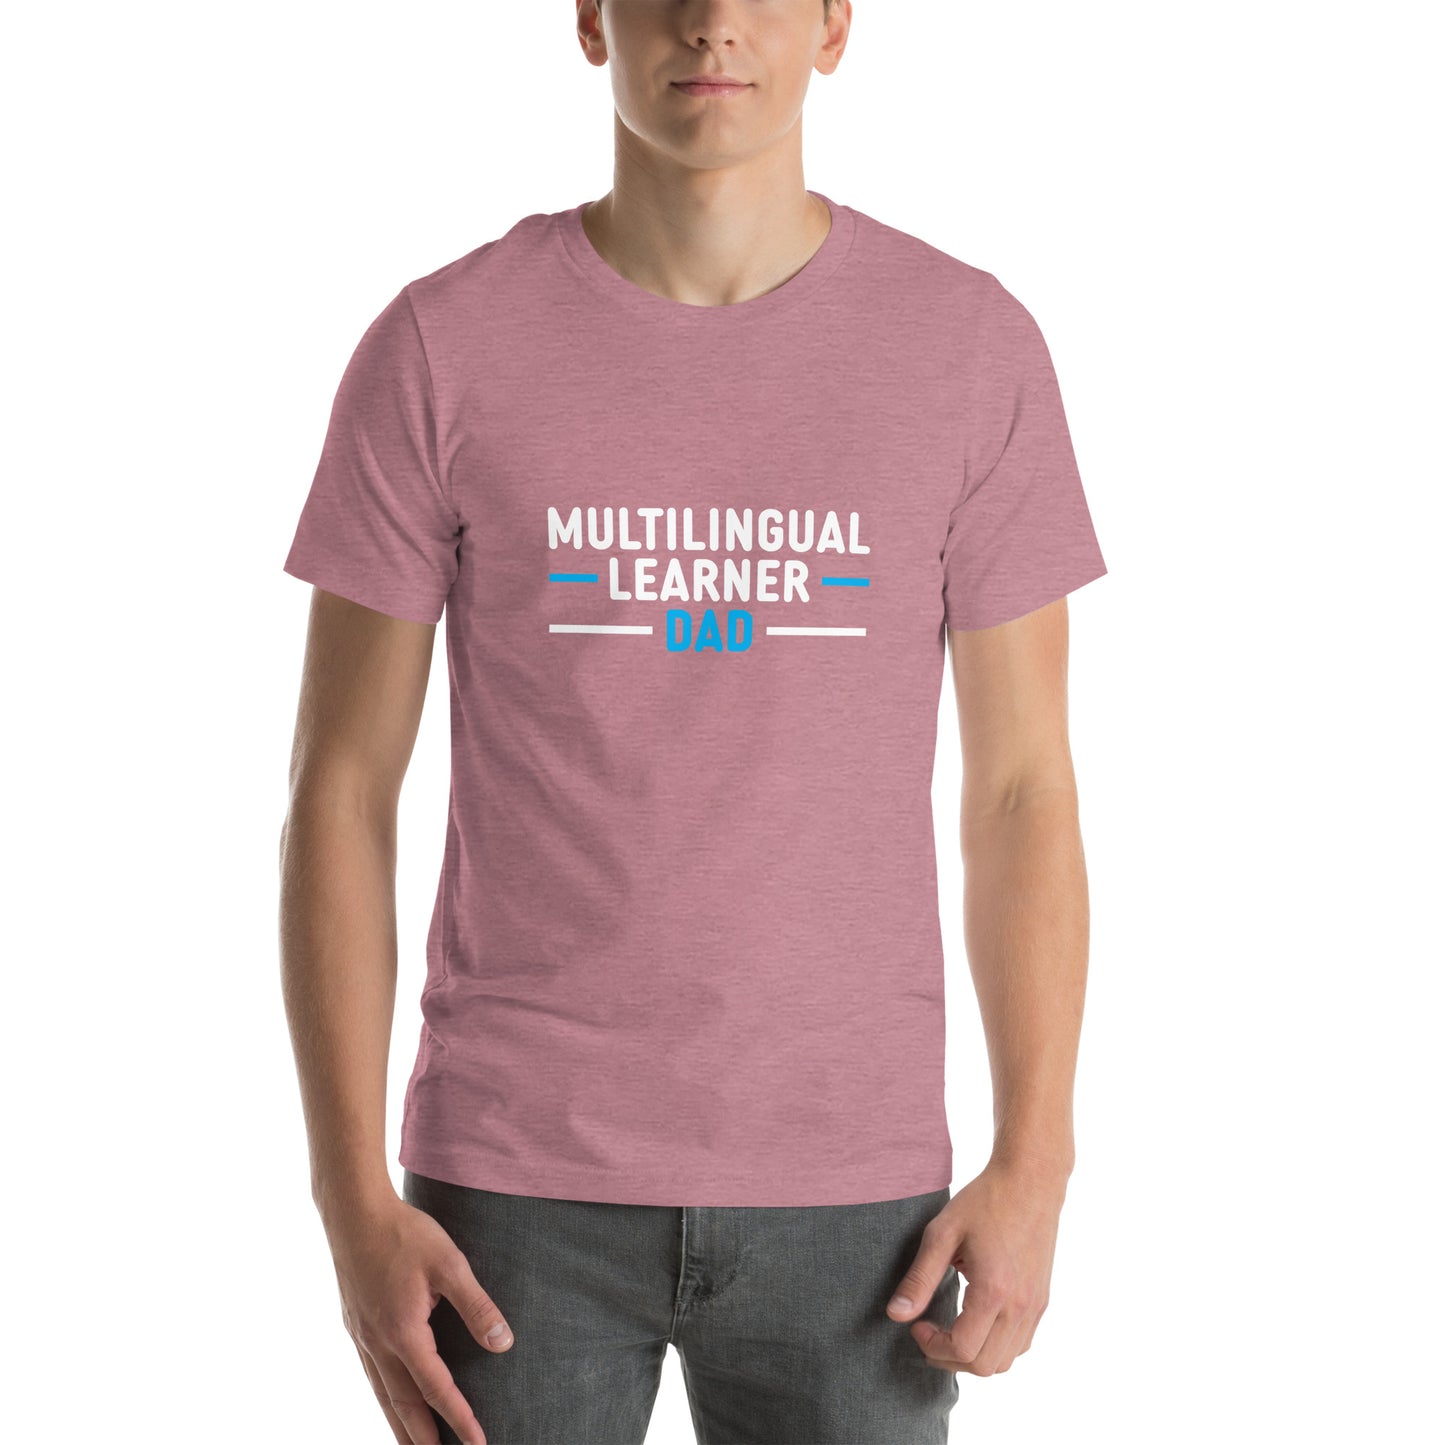 Camiseta de papá de estudiante multilingüe